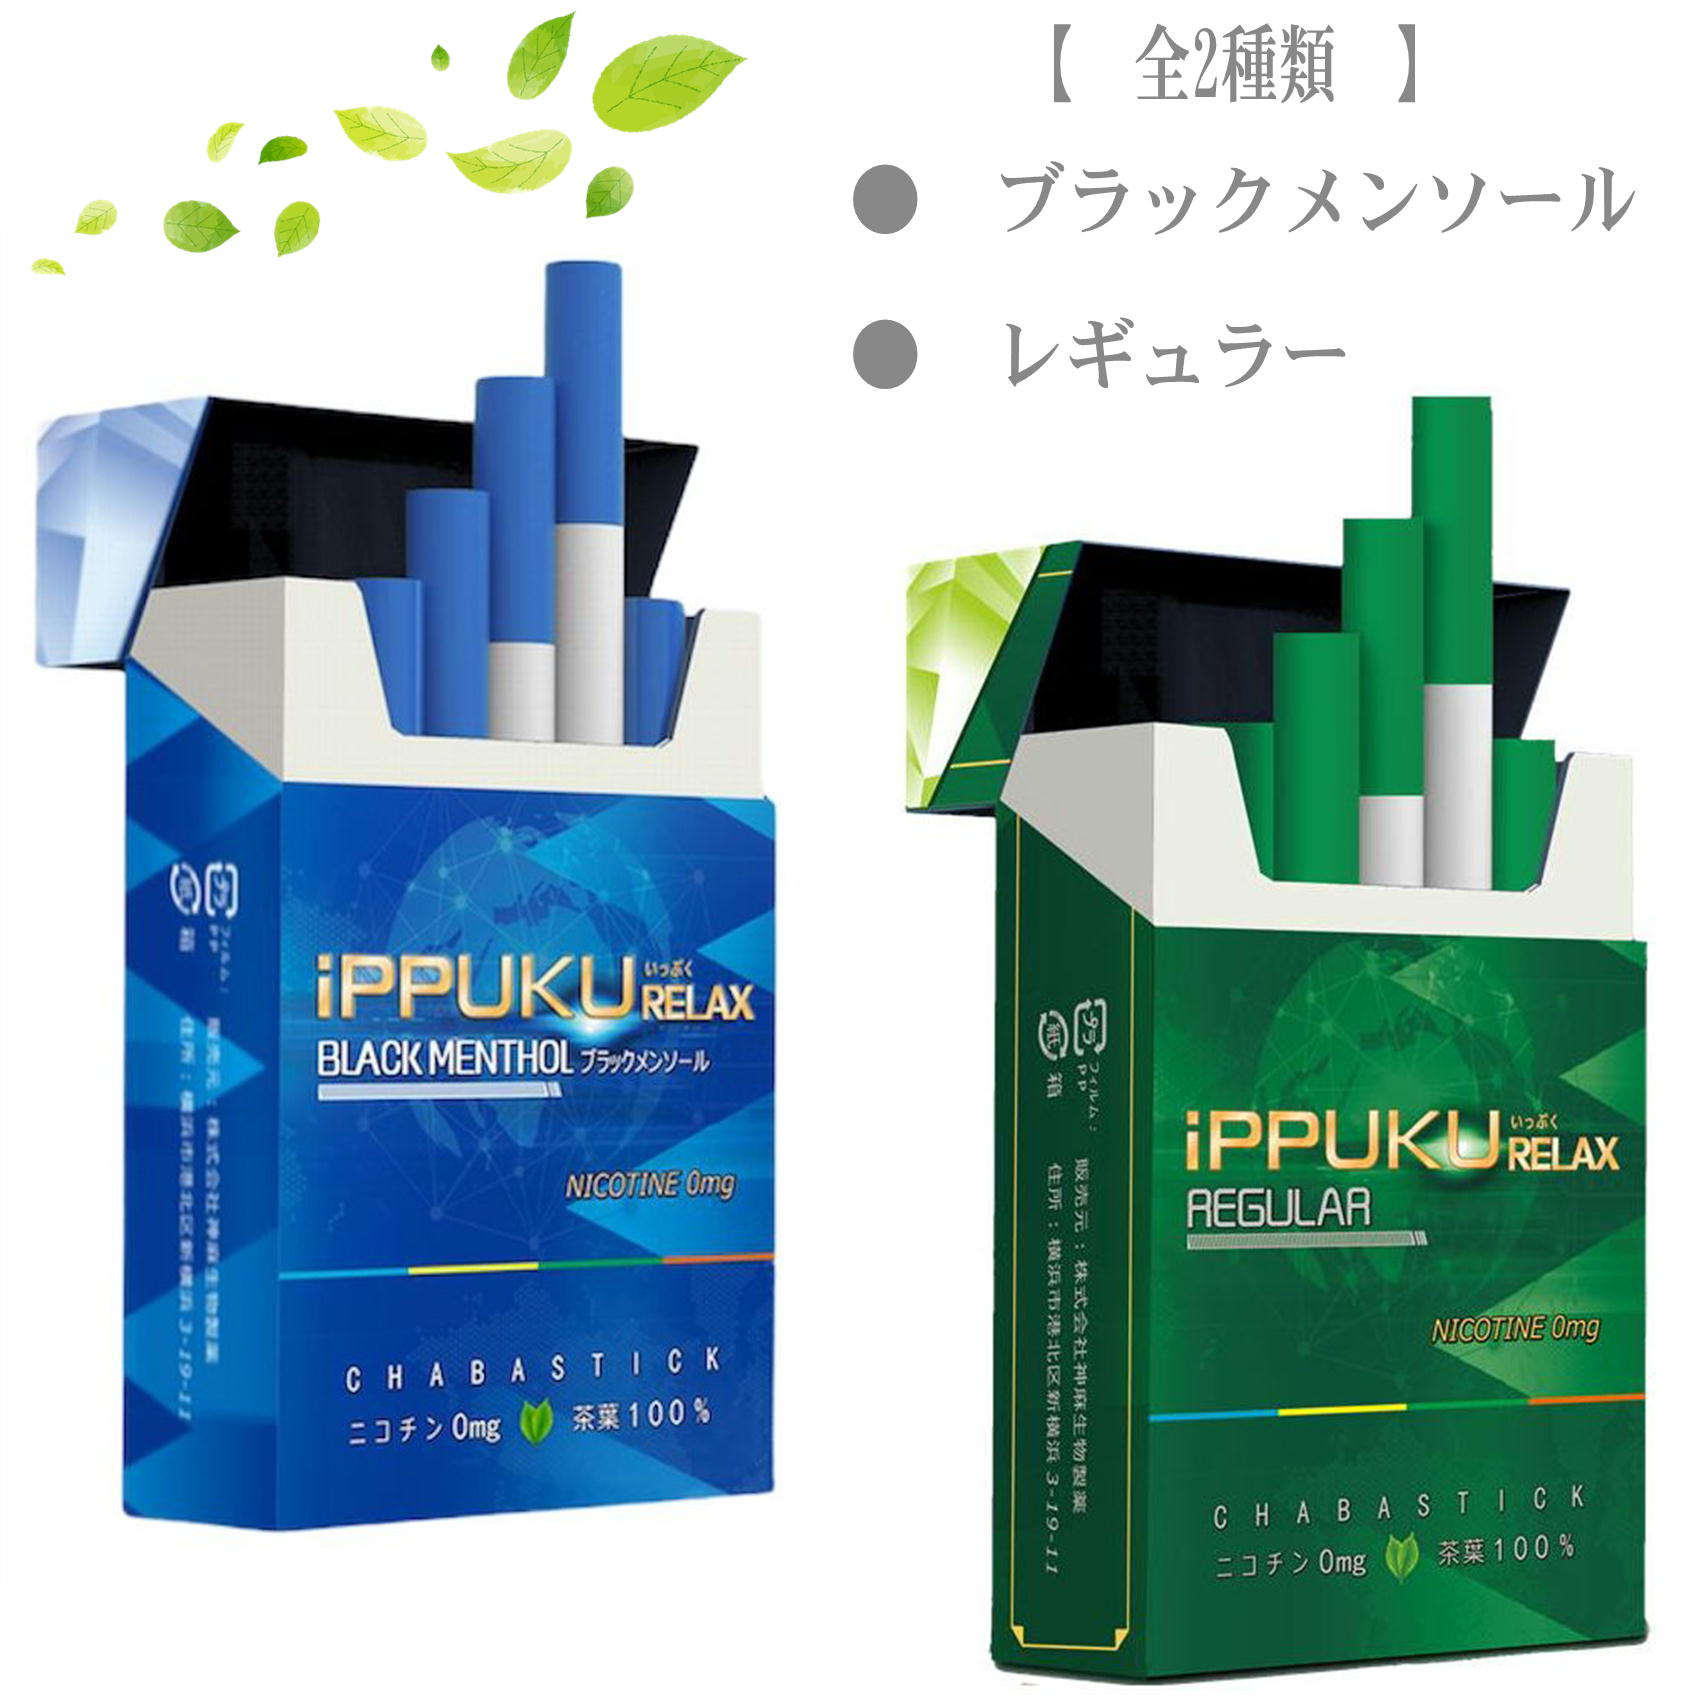 全2種類 iPPUKU RELAX 茶葉スティック 禁煙タバコ 禁煙グッズ 禁煙 